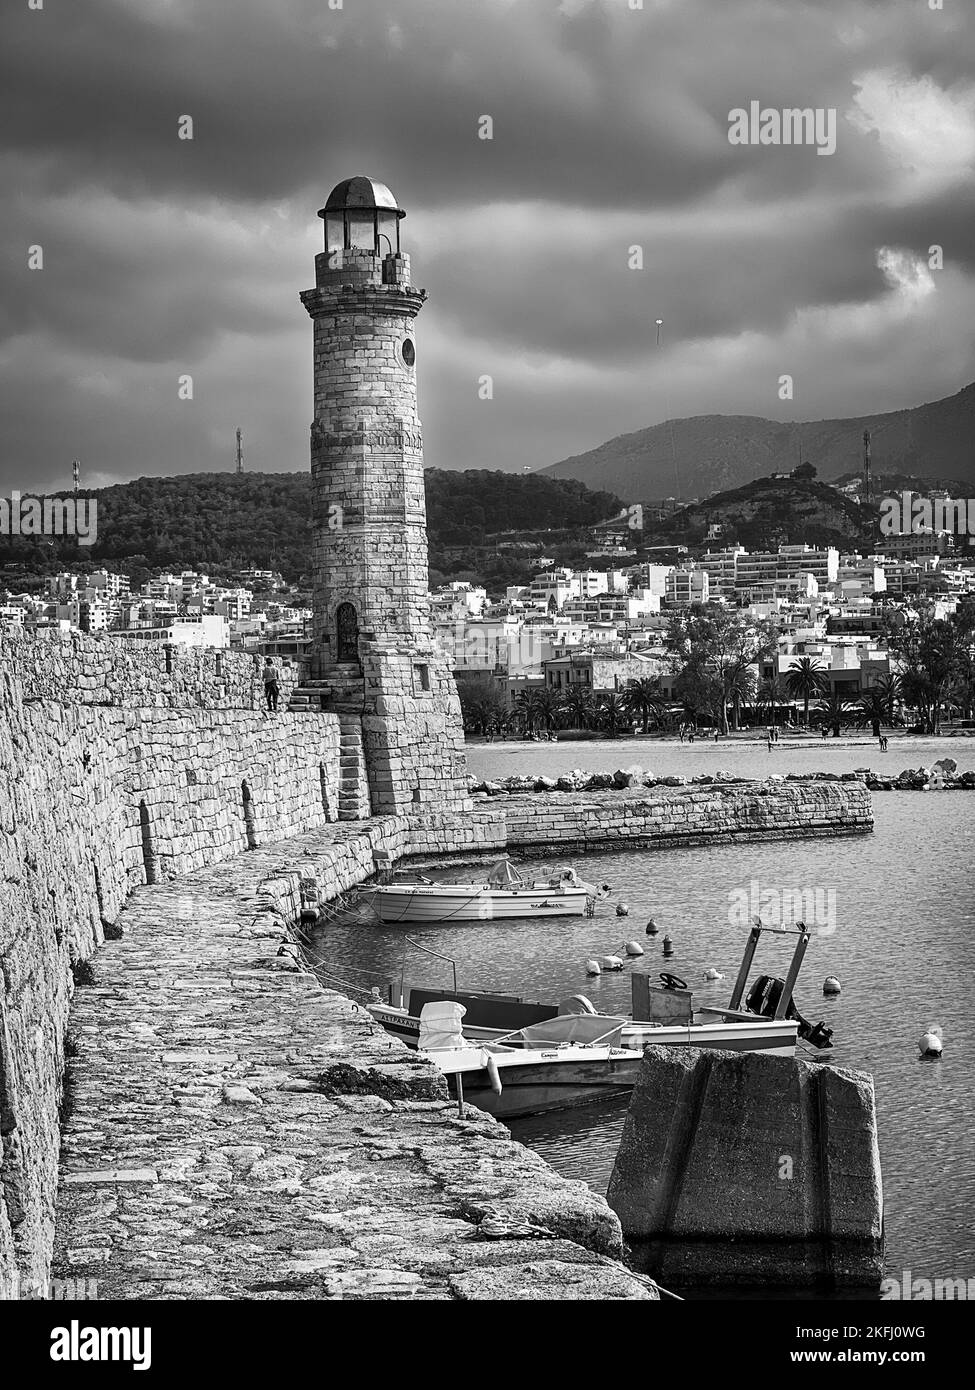 Vista dello storico faro di la Canea al porto sull'isola di Creta contro la città e il cielo nuvoloso durante la tempesta Foto Stock